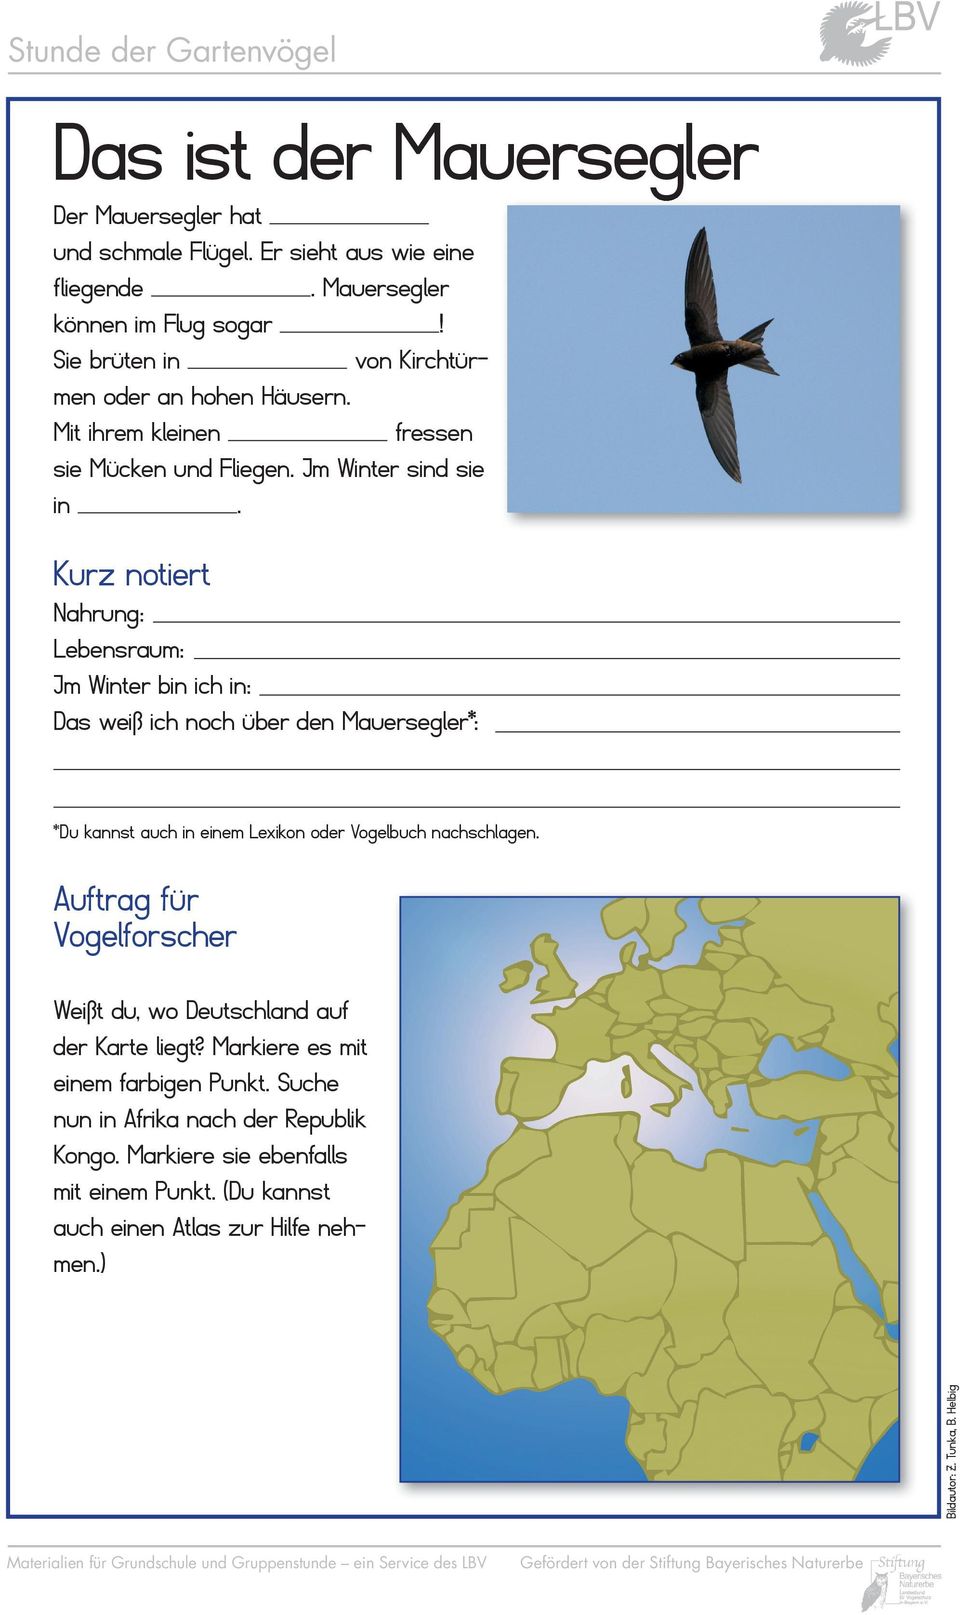 Das weiß ich noch über den Mauersegler*: Auftrag für Vogelforscher Weißt du, wo Deutschland auf der Karte liegt?